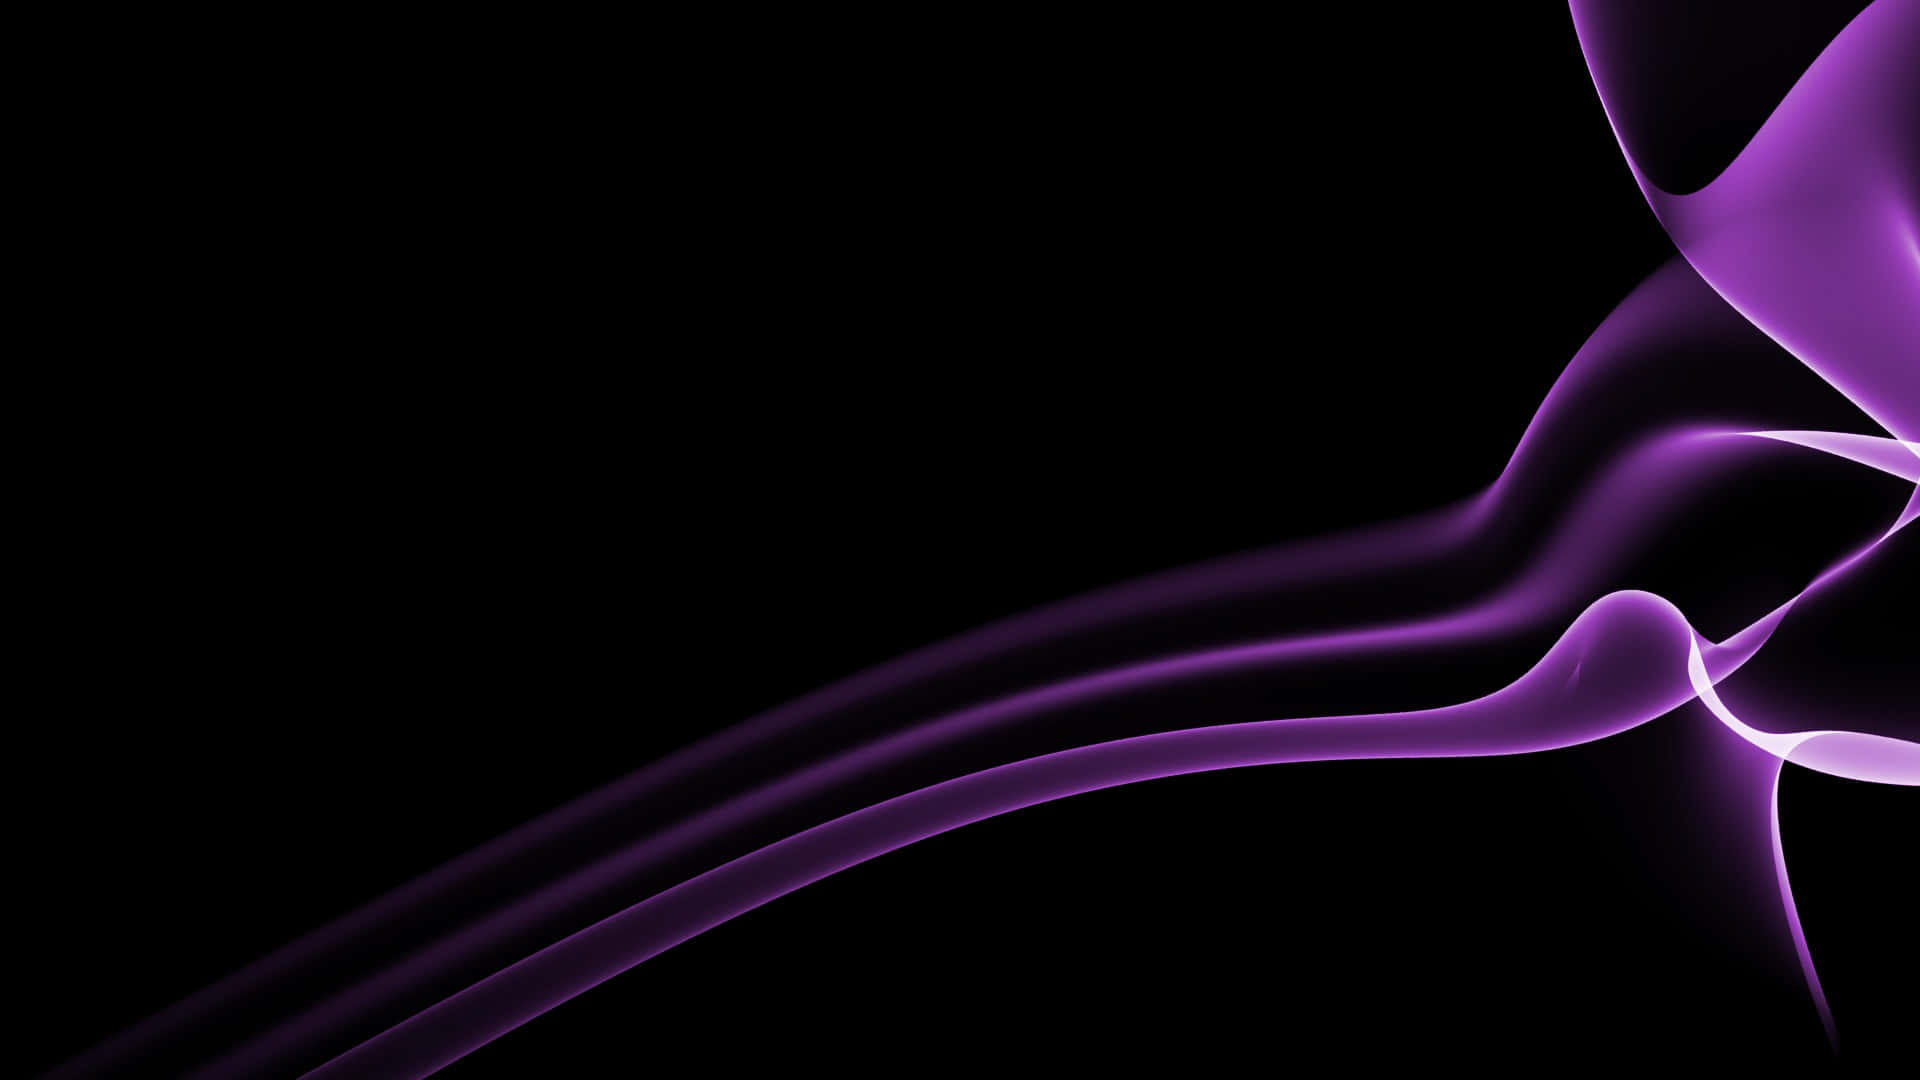 Rich and Textured Dark Purple Background